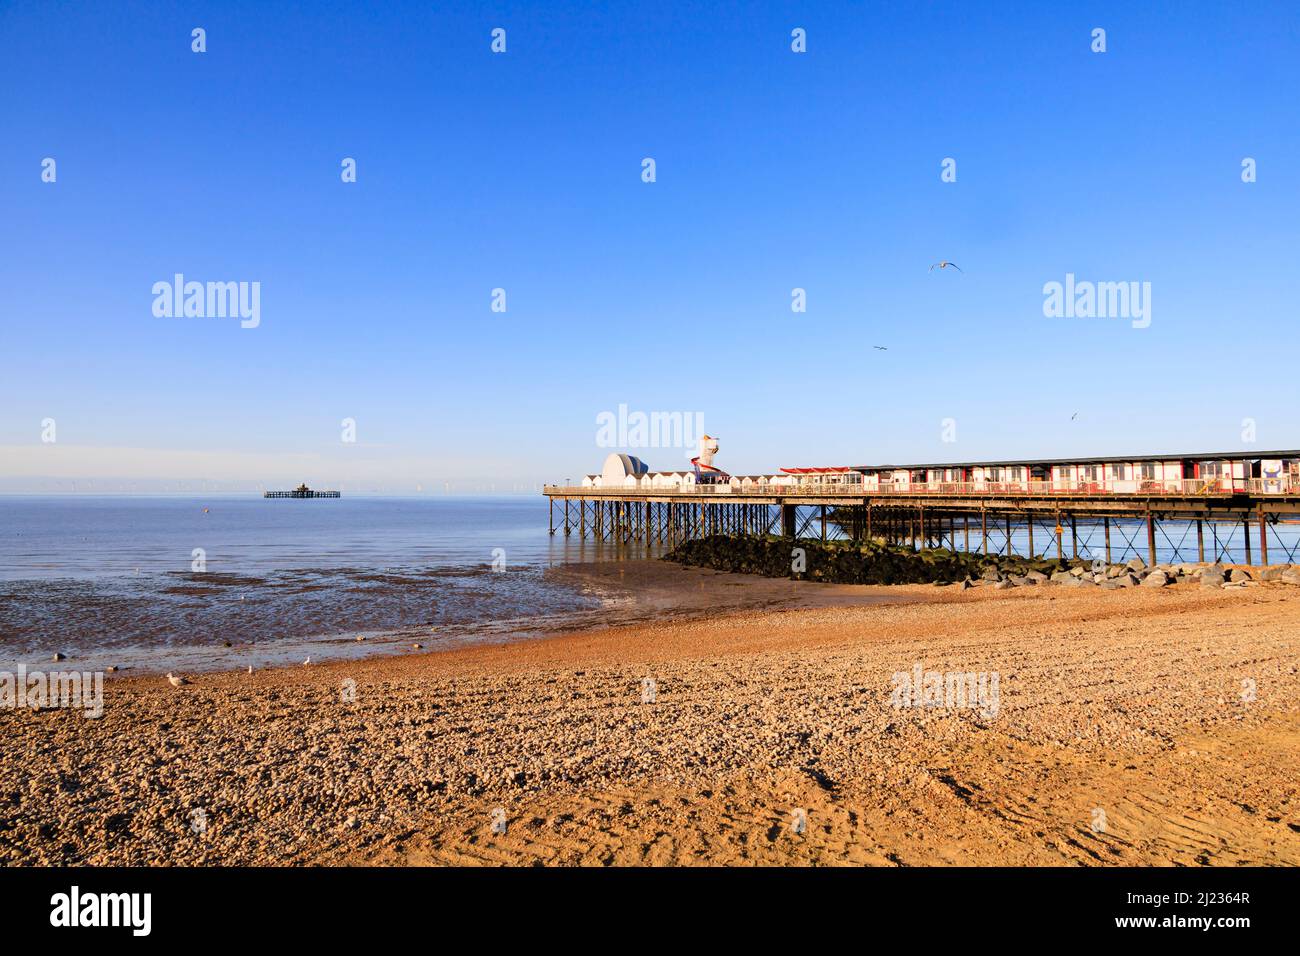 La jetée montrant où la fin abandonnée est en mer. Herne Bay, Kent, Angleterre Banque D'Images